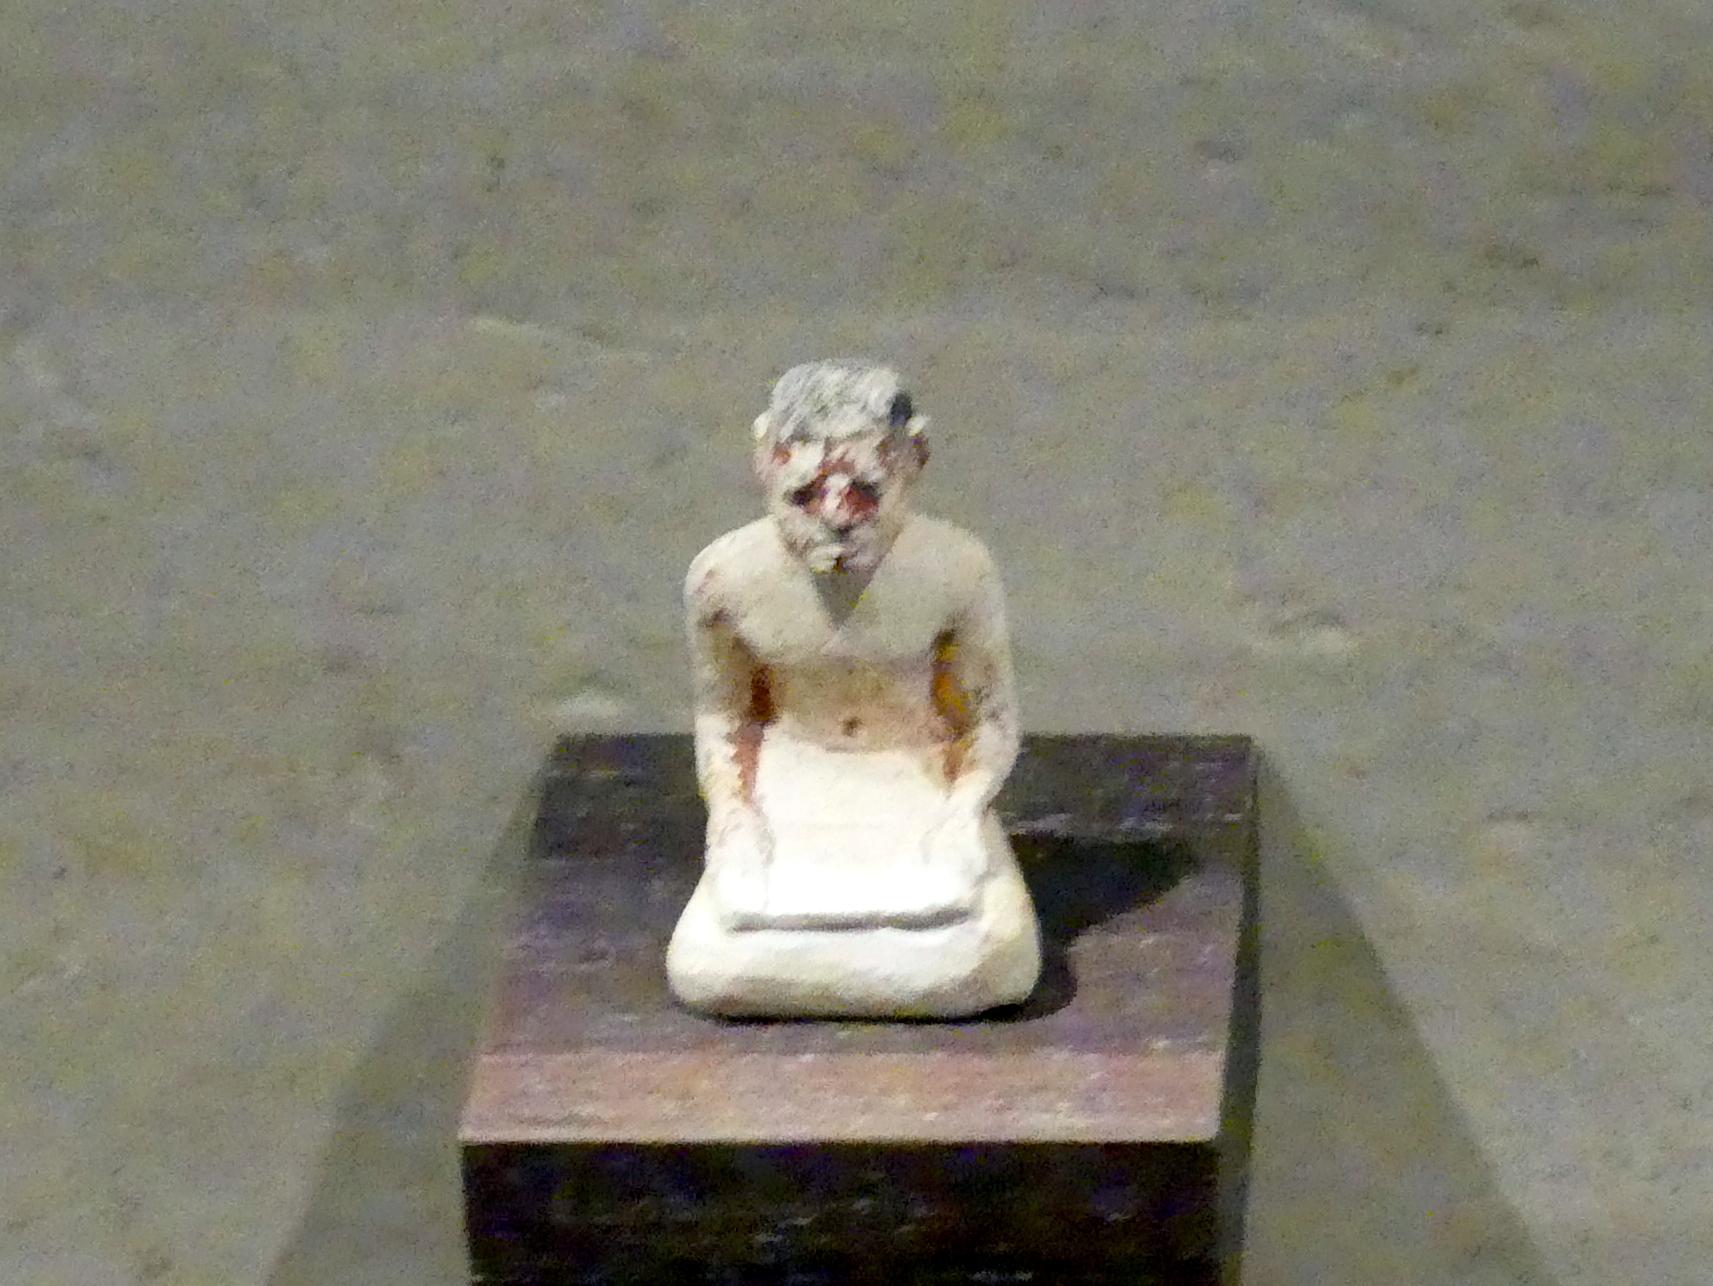 Statuette eines Schreibers, 12. Dynastie, 1803 - 1634 v. Chr., 1900 - 1850 v. Chr.